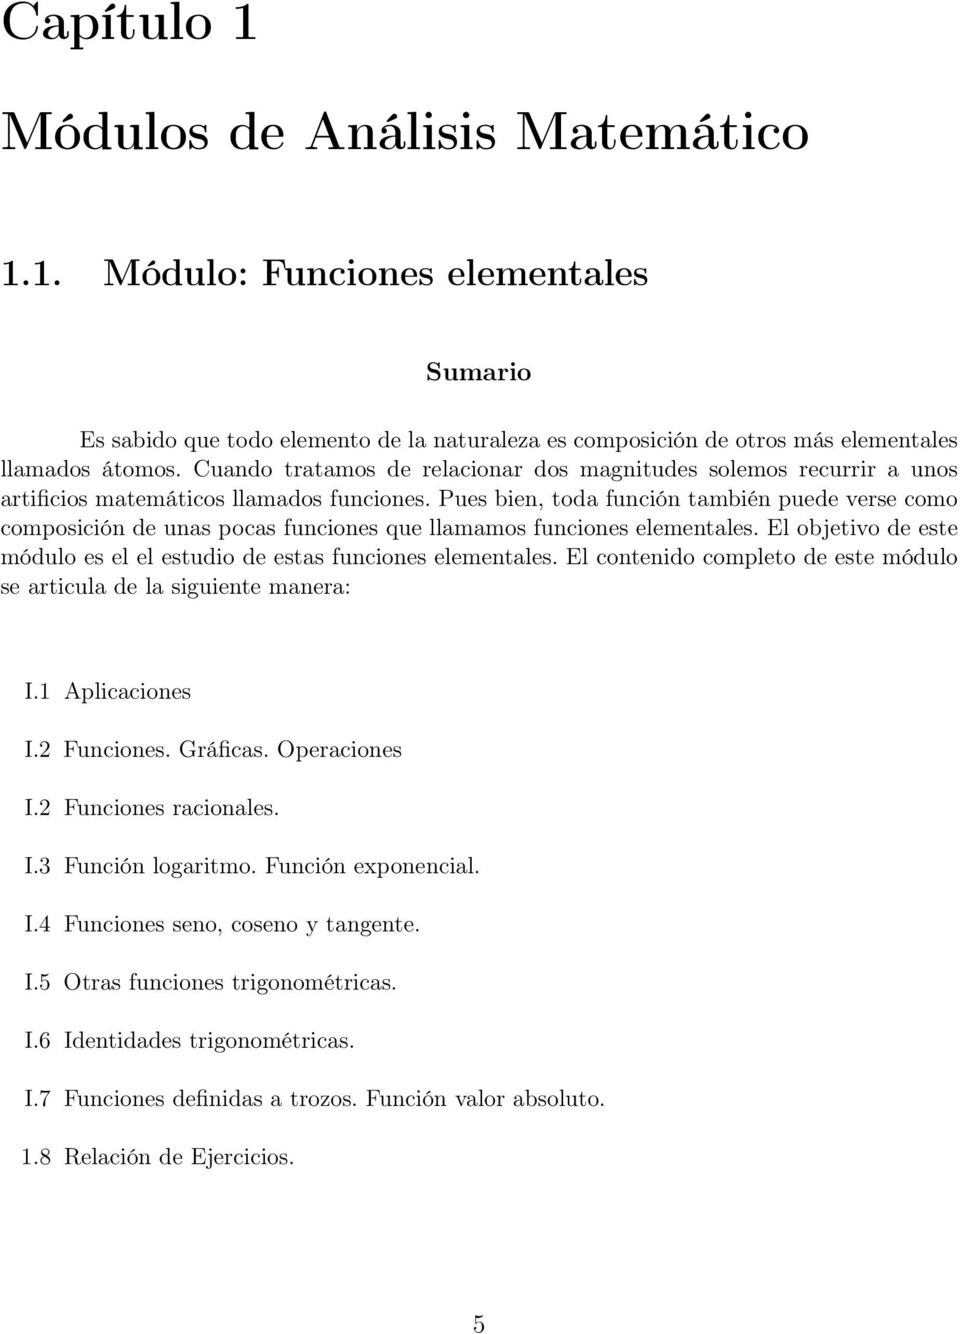 Pues bien, toda función también puede verse como composición de unas pocas funciones que llamamos funciones elementales. El objetivo de este módulo es el el estudio de estas funciones elementales.